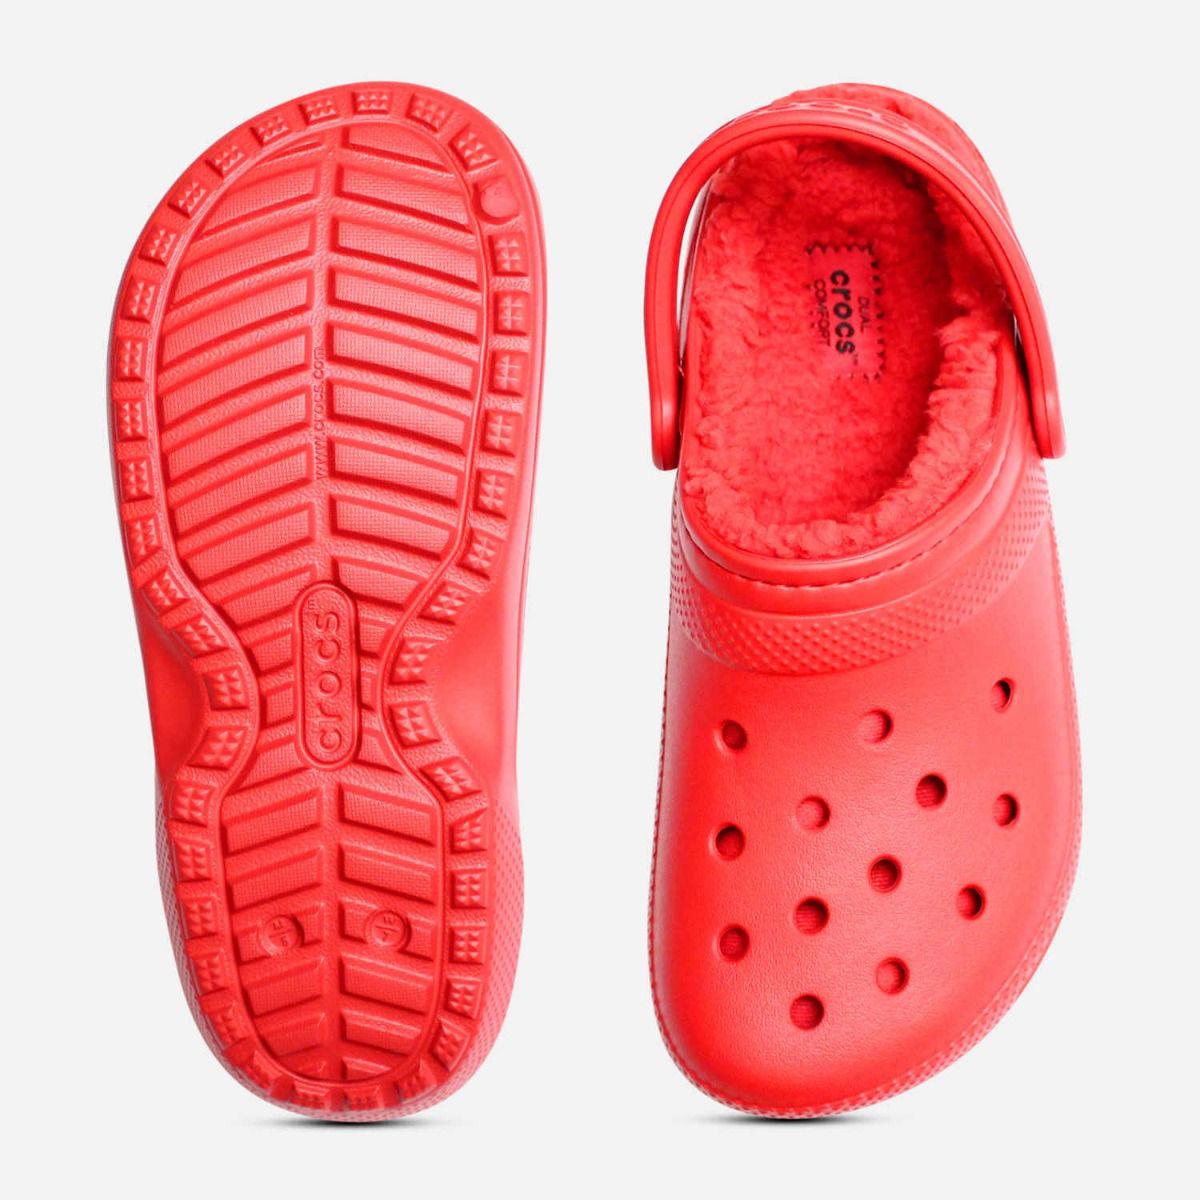 classic red crocs